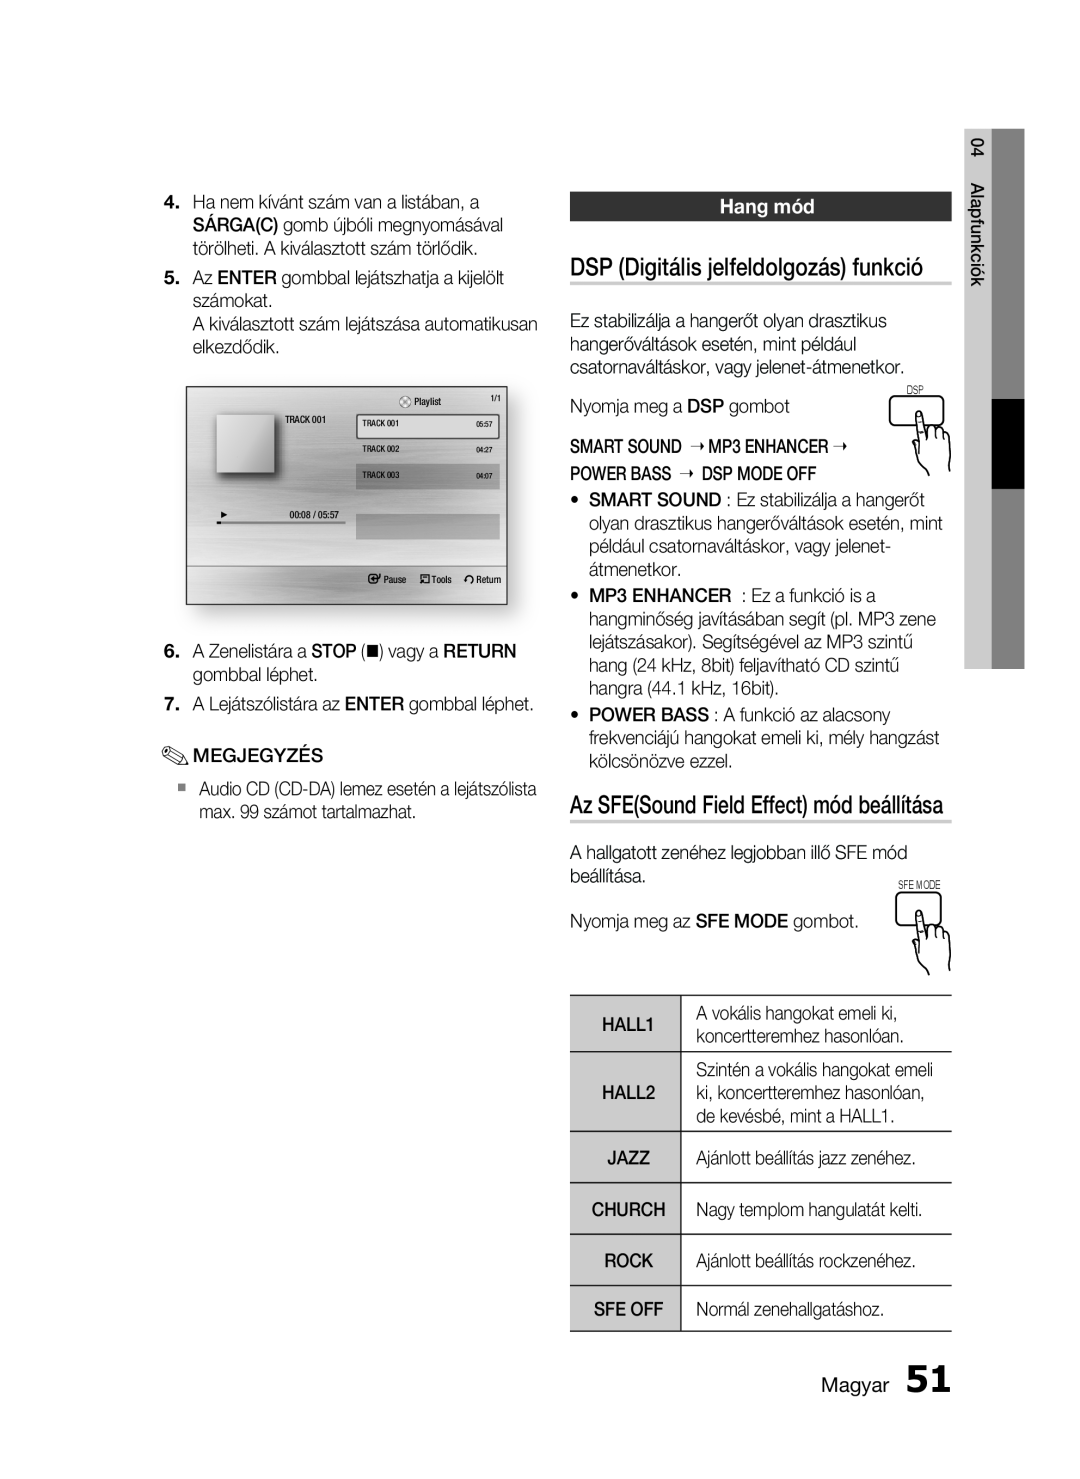 Samsung HT-C5900/XEE manual DSP Digitális jelfeldolgozás funkció, Hang mód, Az SFESound Field Effect mód beállítása, Magyar 